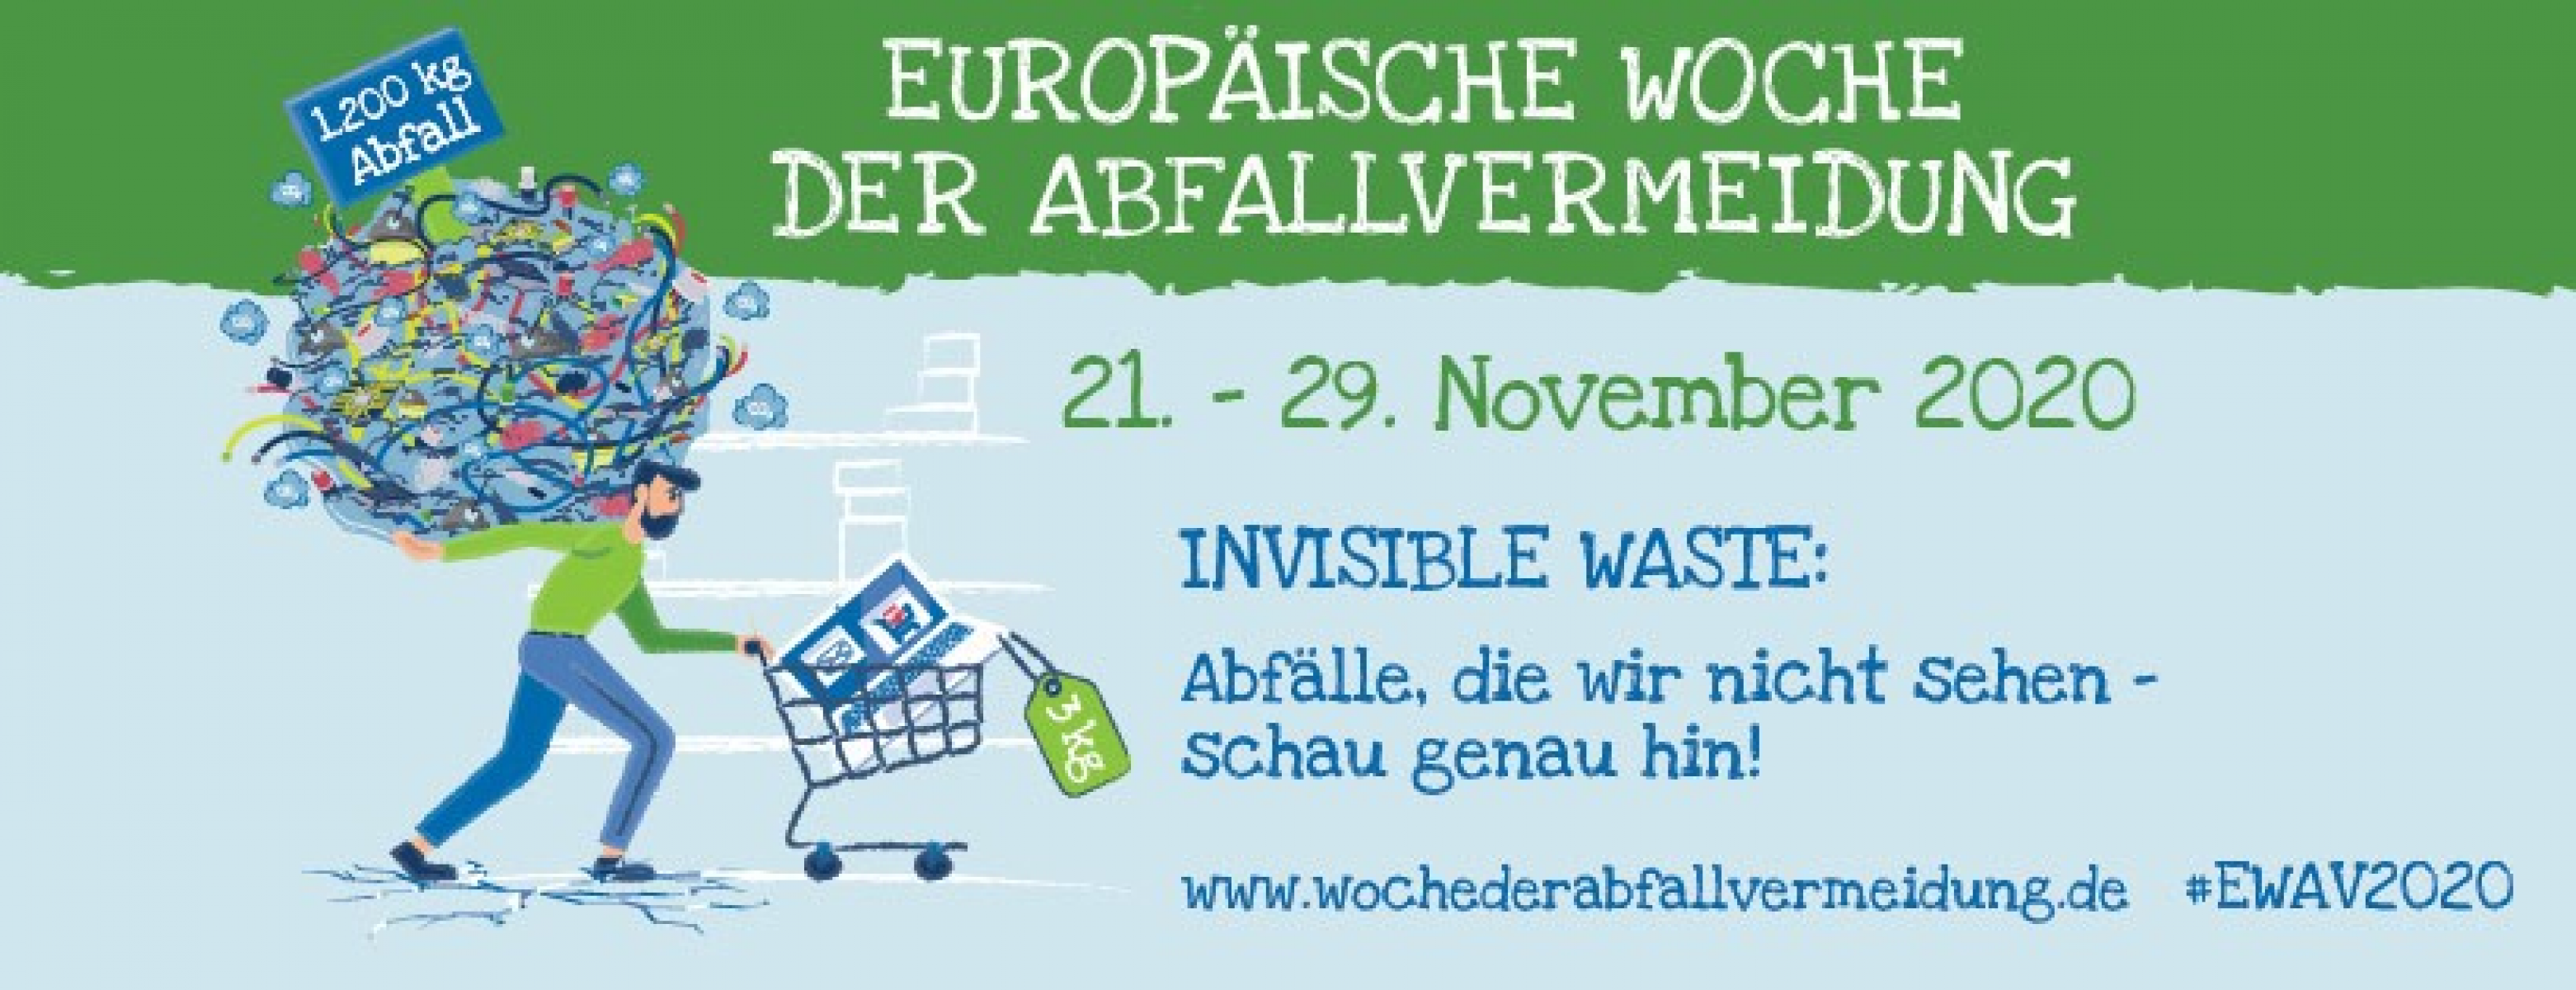 Lebensmittel wertschätzen: Europäische Woche der Abfallvermeidung